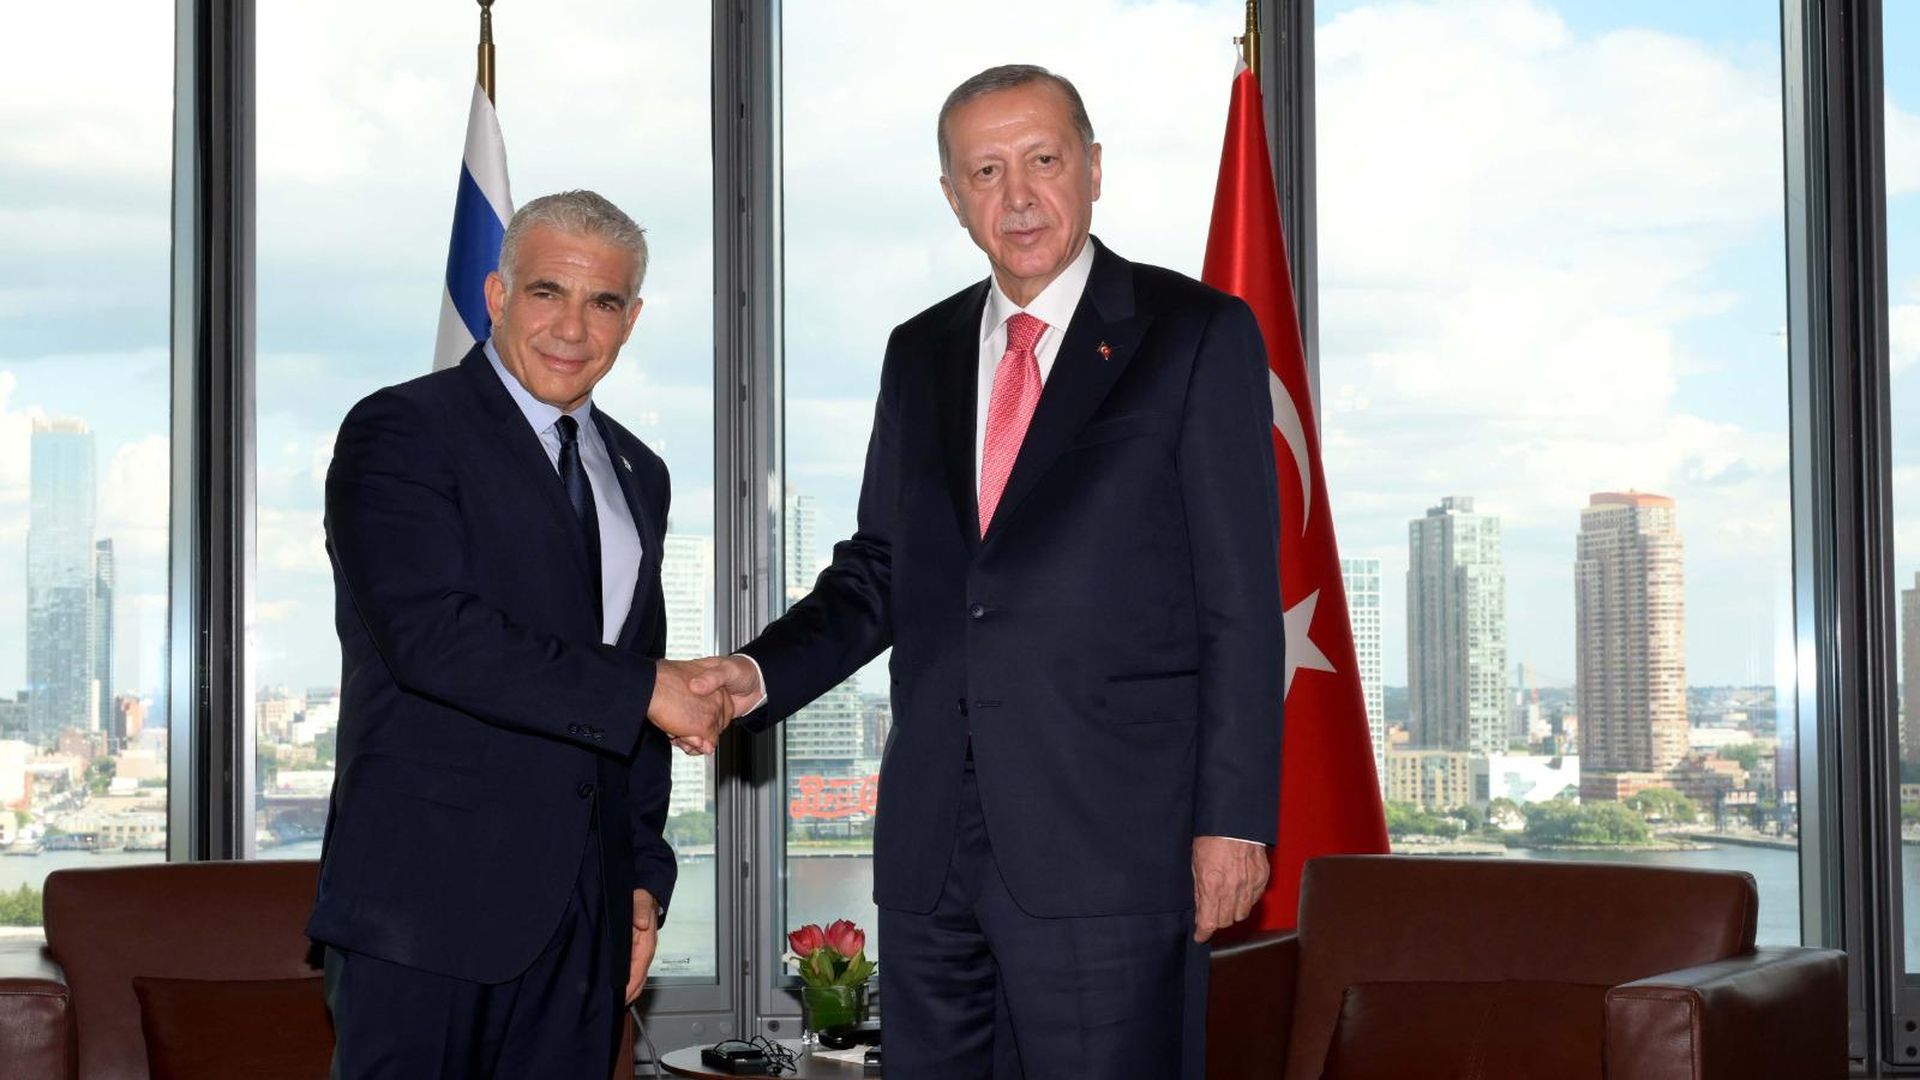 Lapid and Erdogan